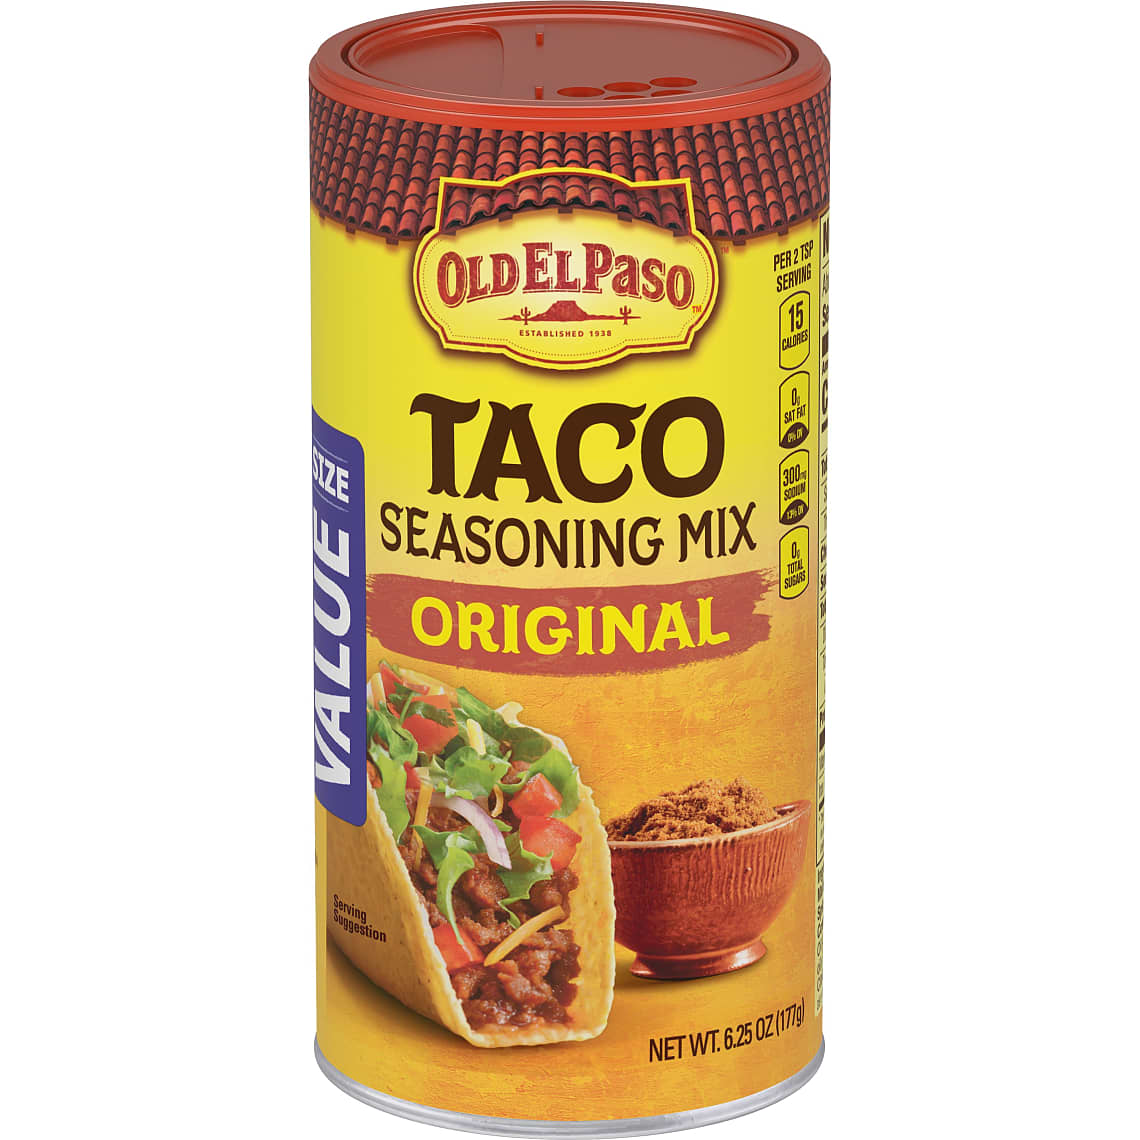 Old El Paso Taco Original Seasoning 6 oz